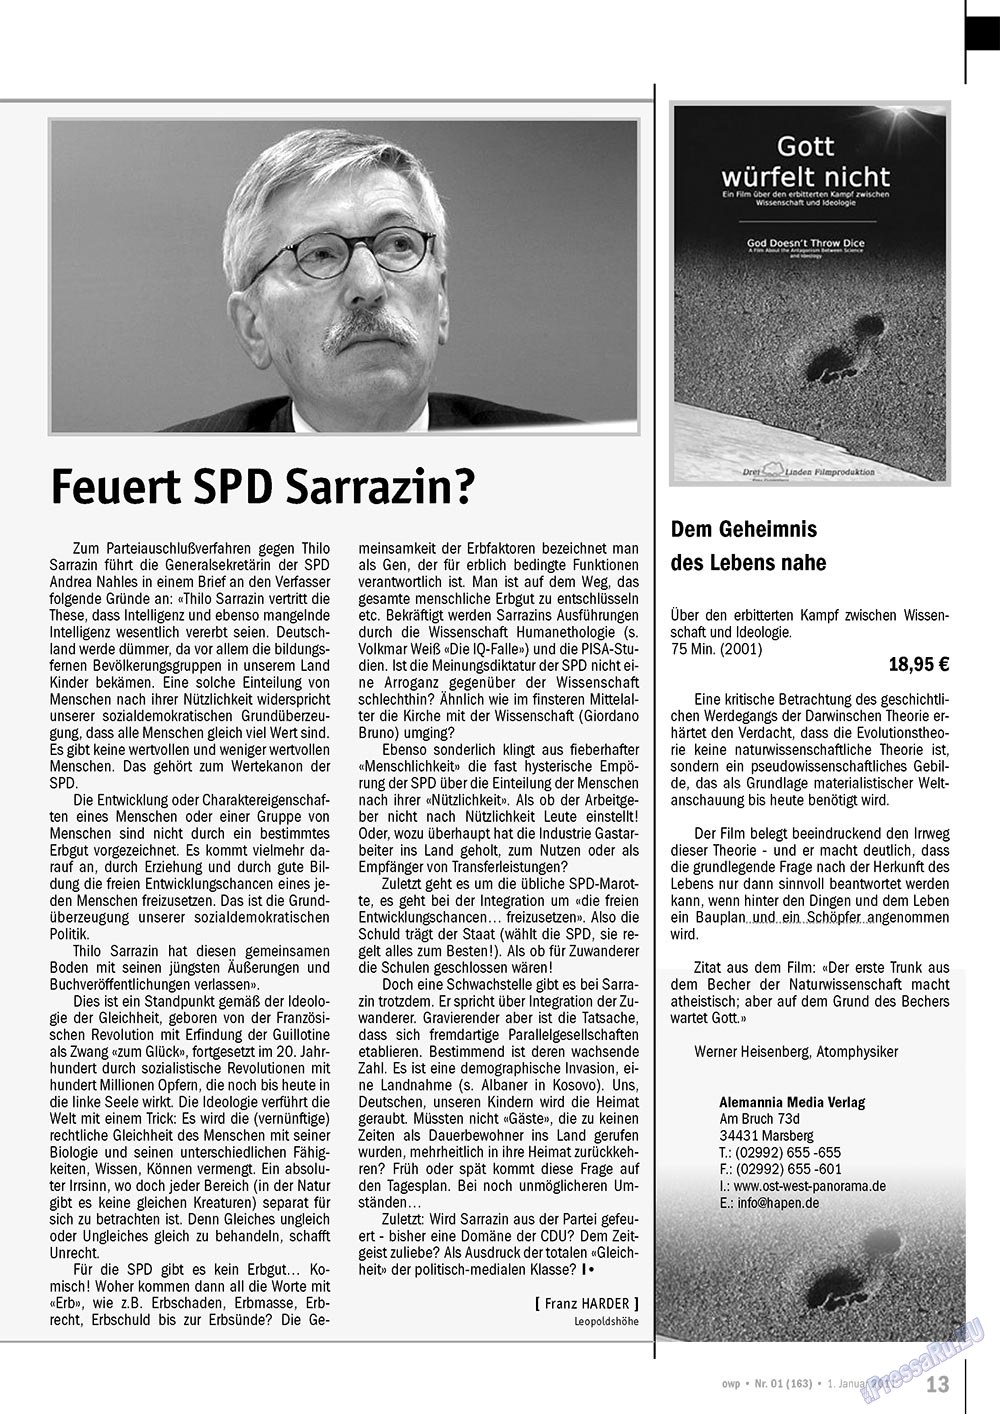 Ost-West Panorama (журнал). 2011 год, номер 1, стр. 13